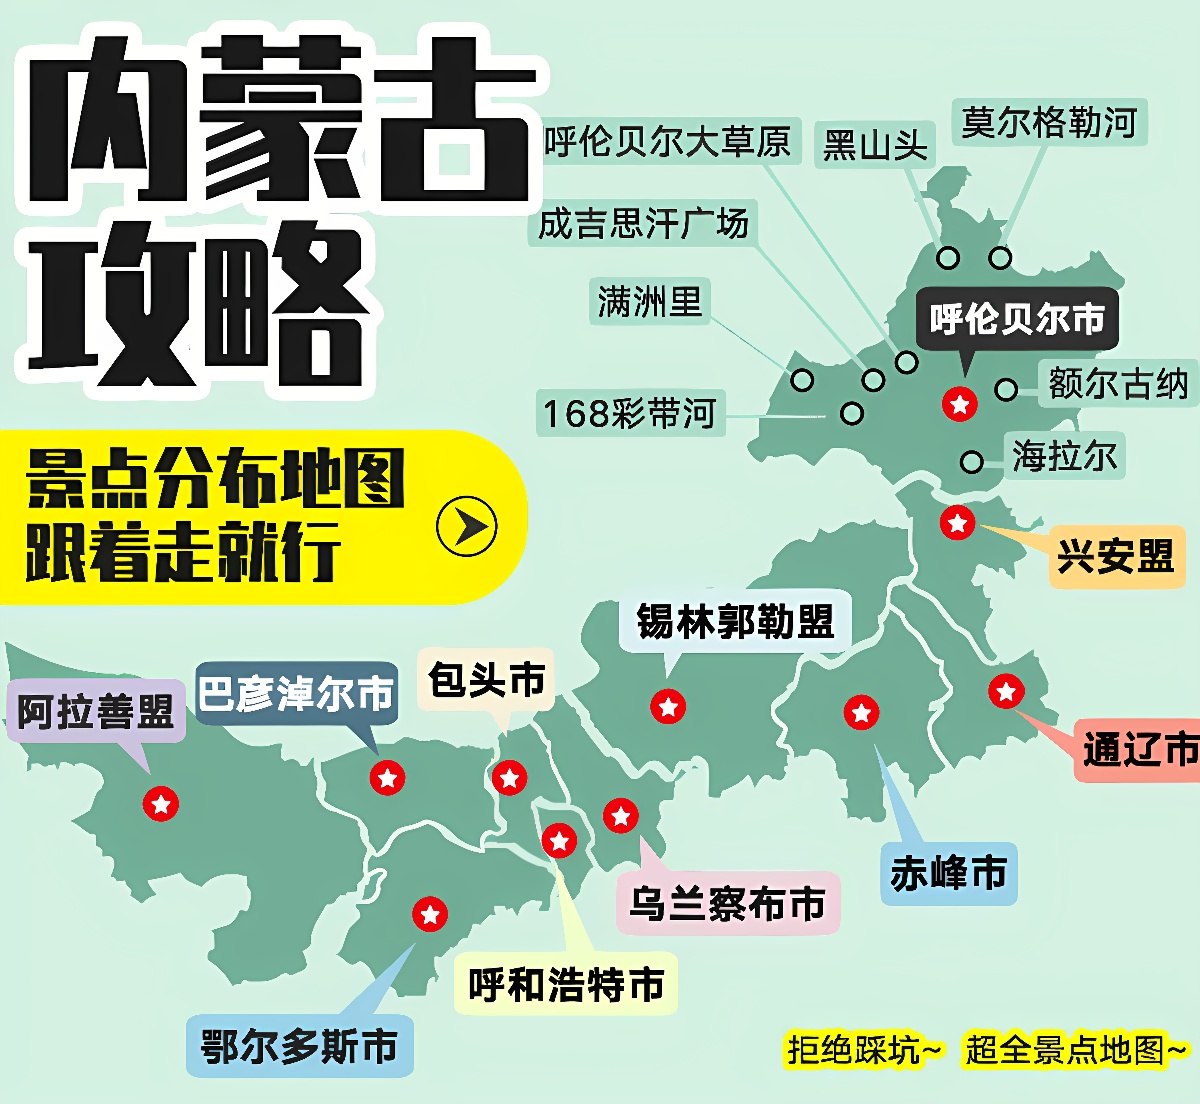 这是一张展示中国各地高铁网络布局的信息图，包含城市名称、高铁线路和相关的图示标记。